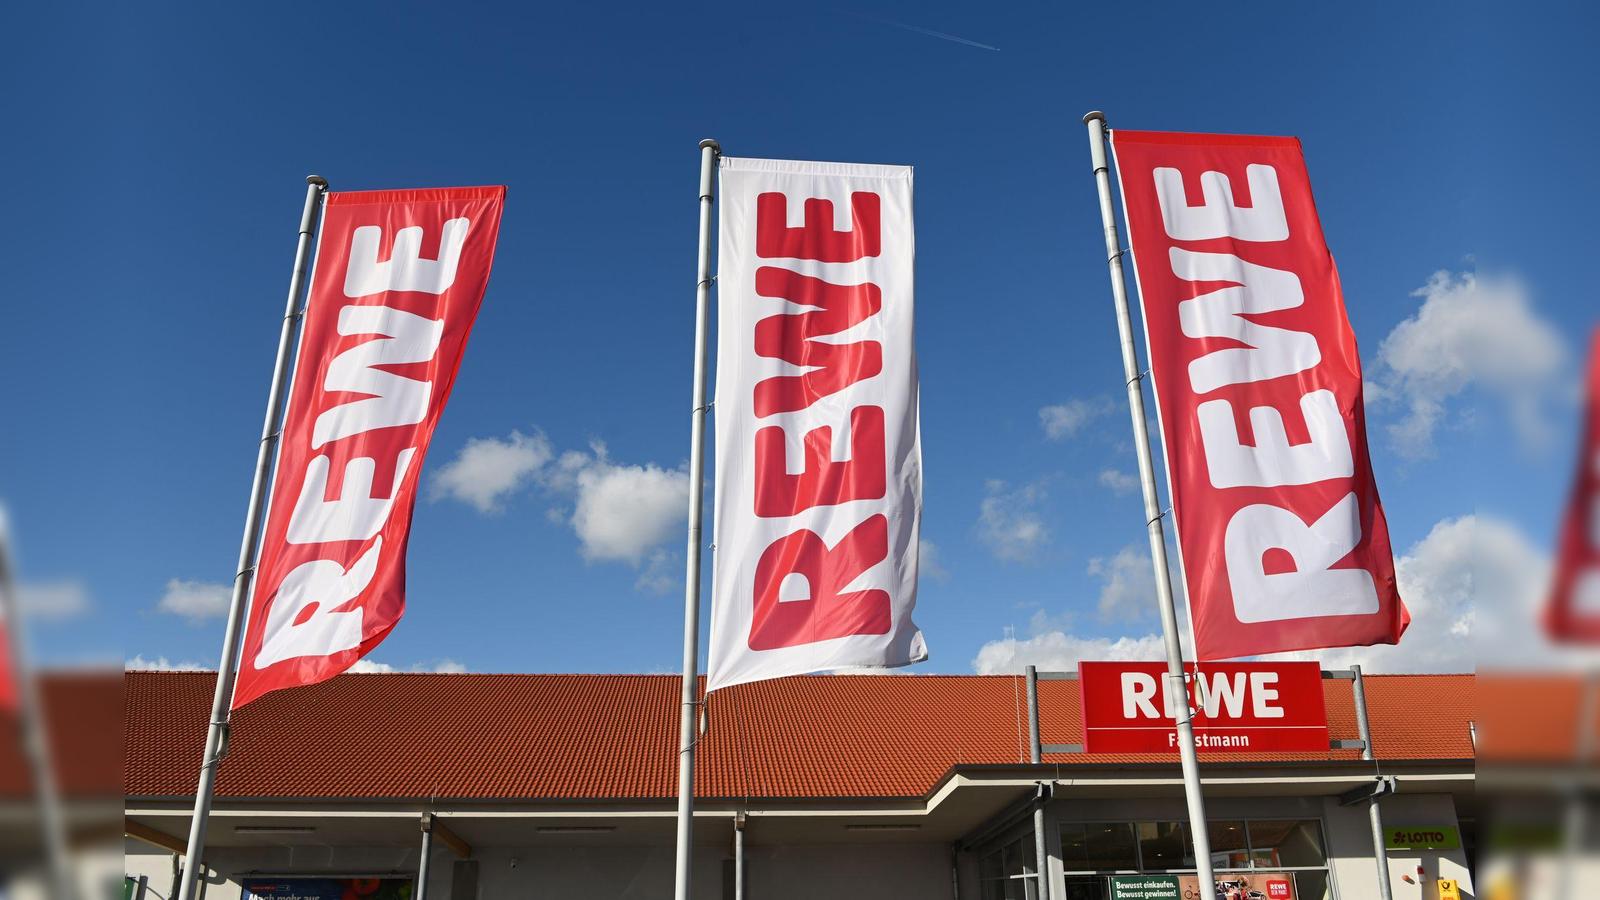 Rewe in Weiden-West eröffnet im September | Weiden24